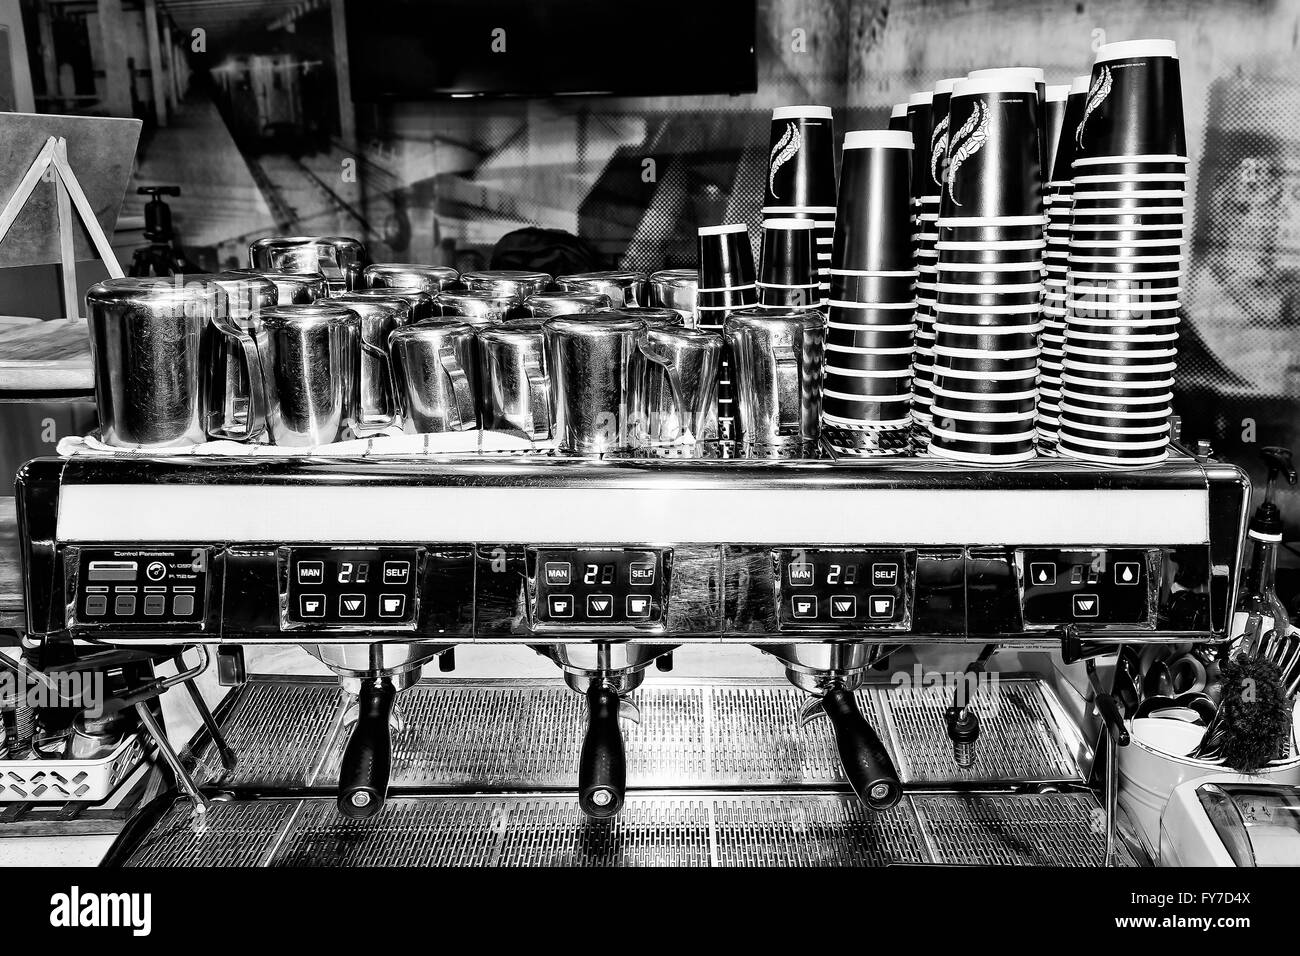 Imagen en blanco y negro de gran escala industrial barista, máquina de café en una cafetería listo para servir a los clientes con montones de tazas y mil Foto de stock